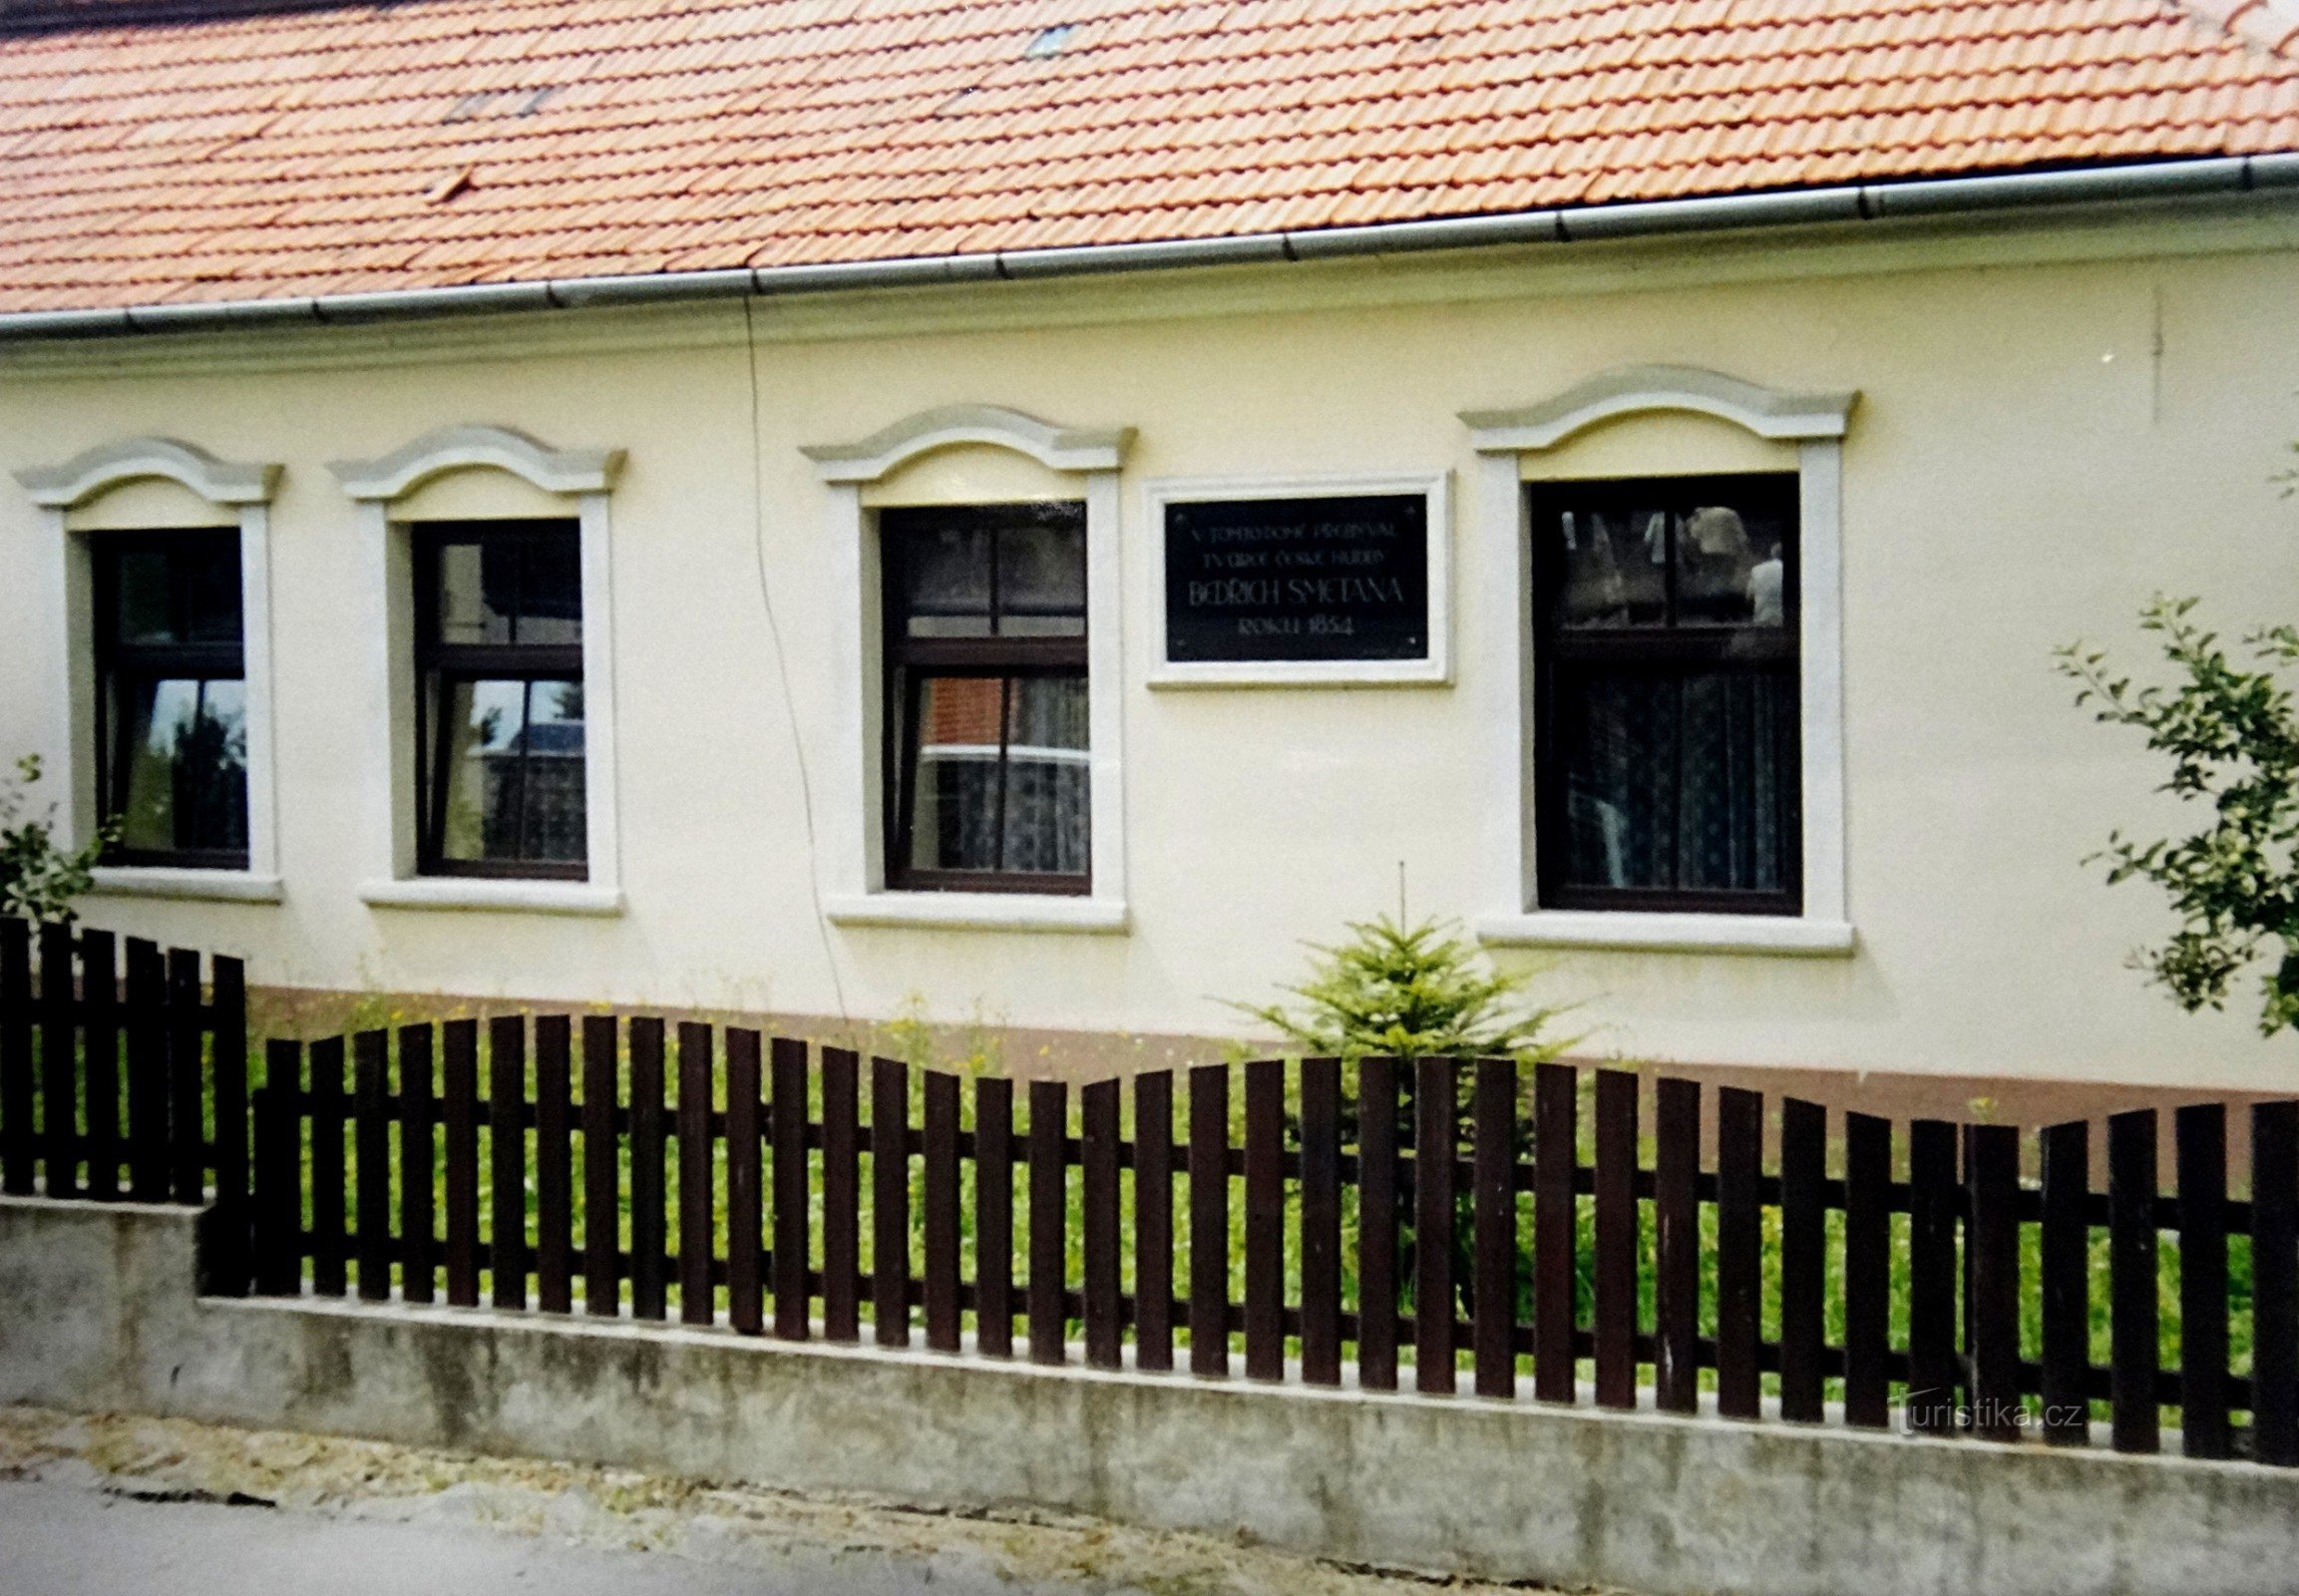 Týn nad Bečvou casa donde vivía la familia Smetanov